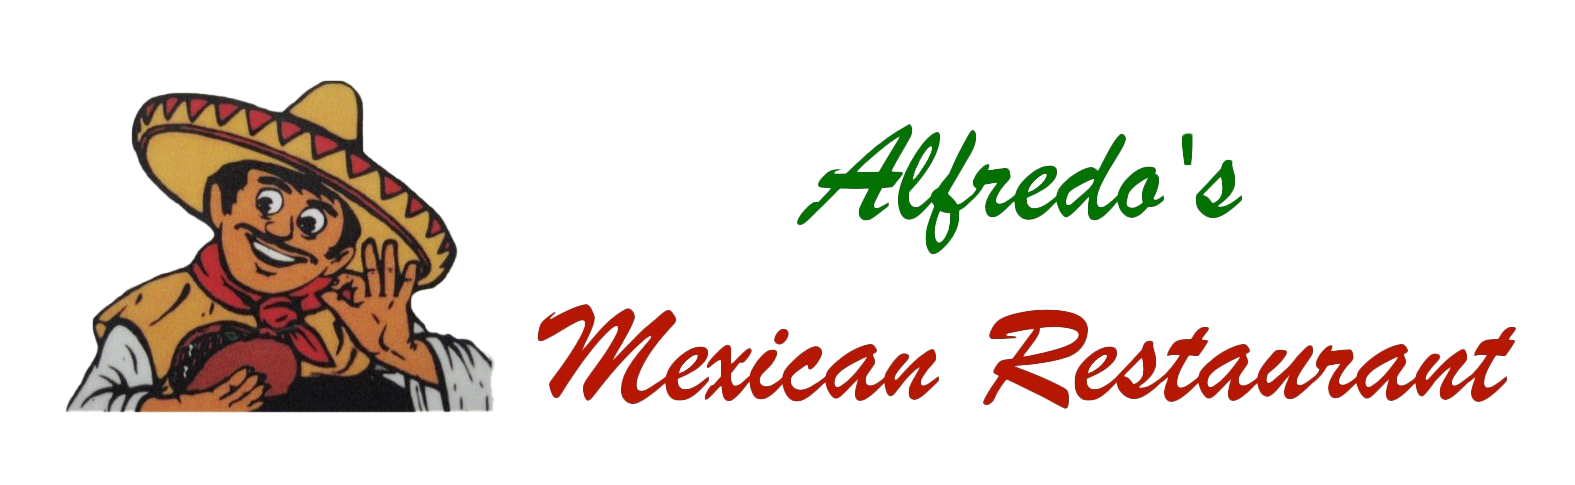 Alfredo's Mexican Restaurant rectangle logo